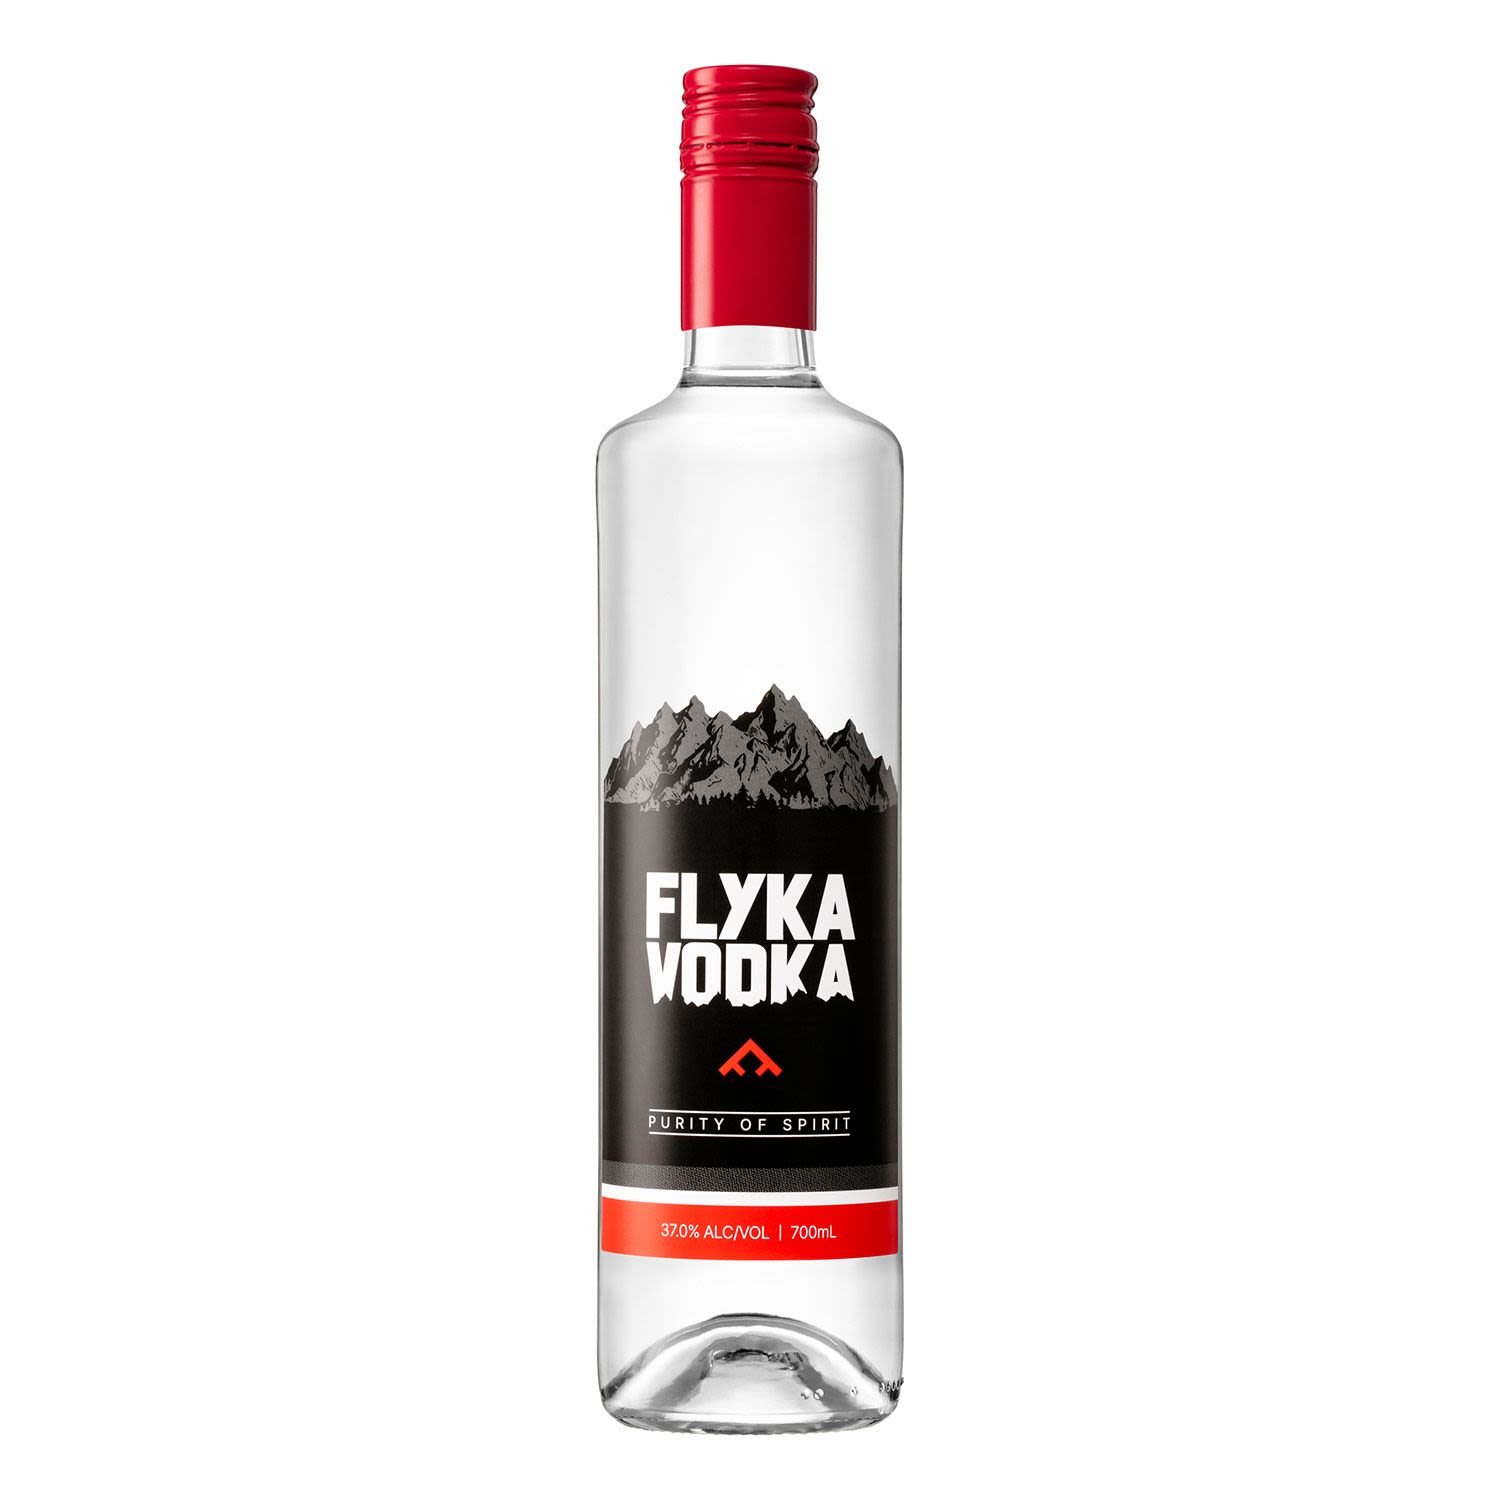 Flyka Vodka 700mL Bottle